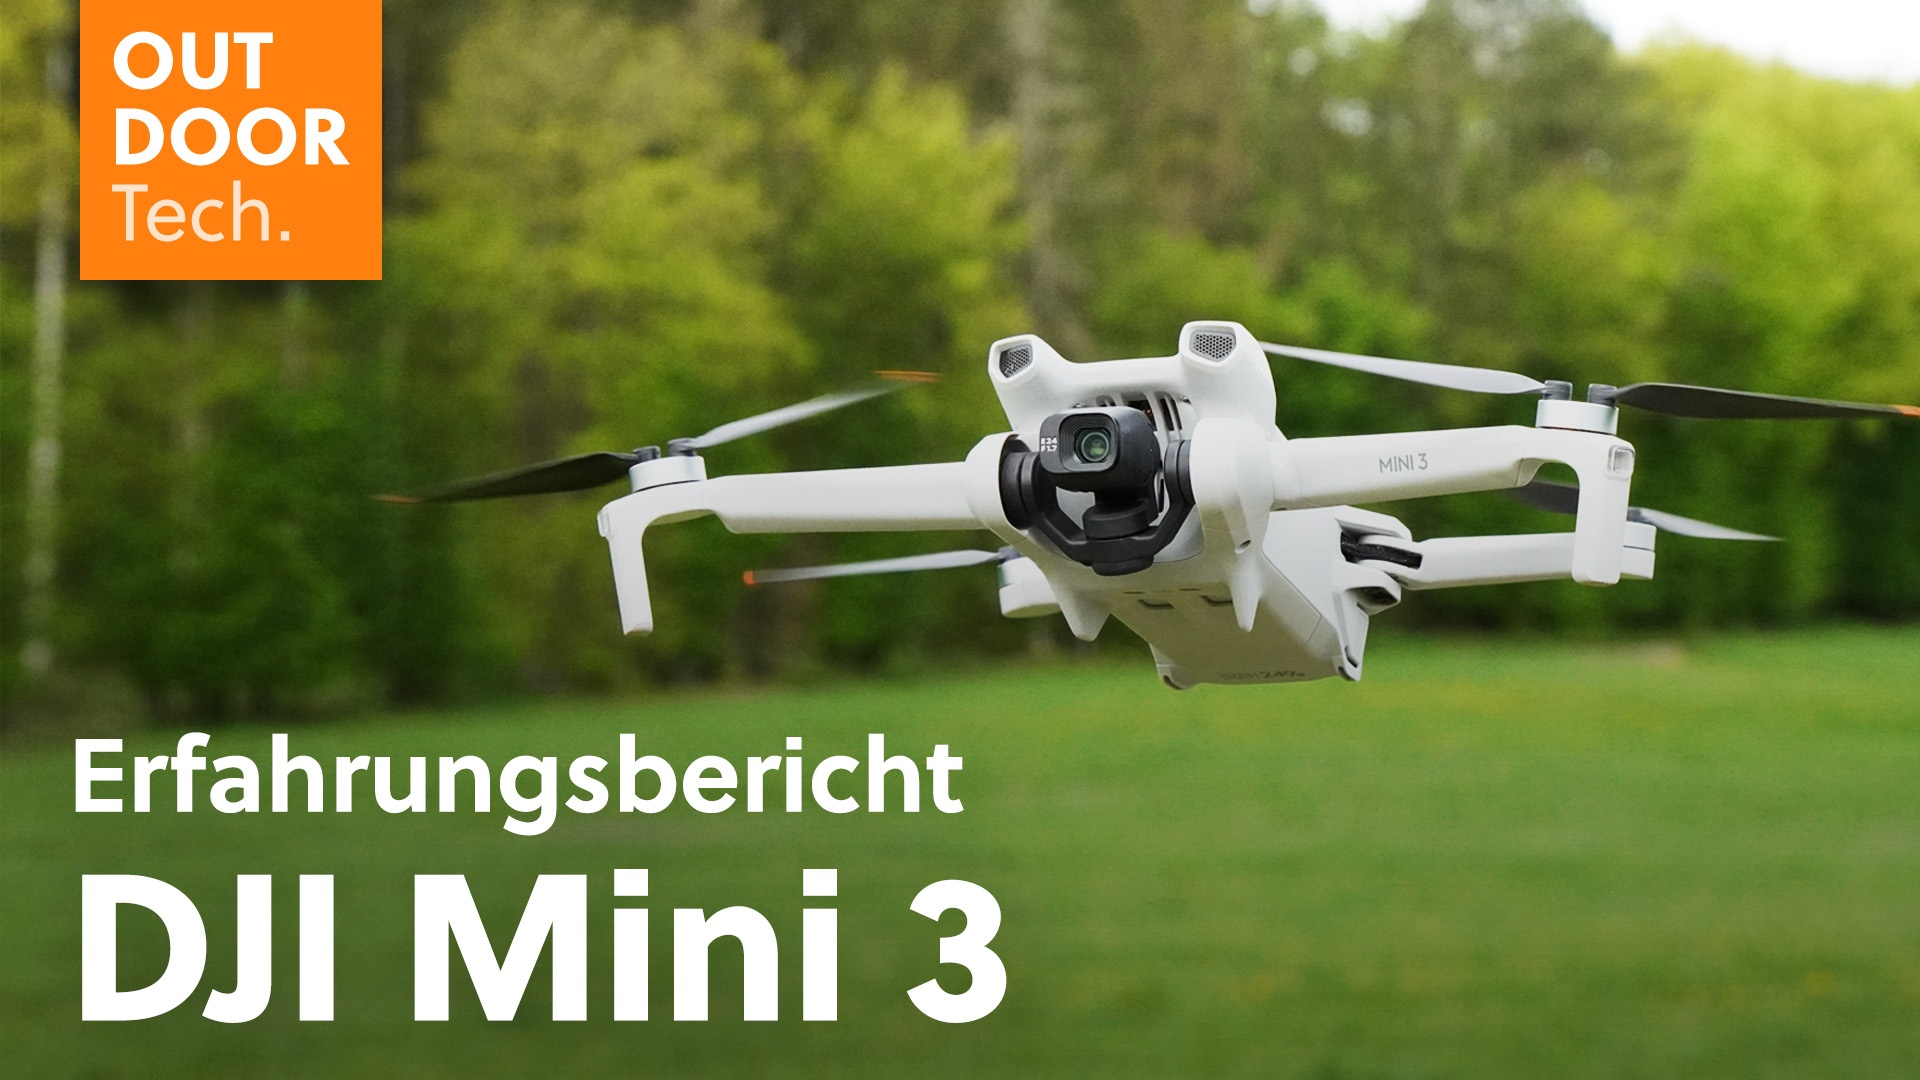 DJI Mini 3 Pro: Längere Flugzeit sowie bessere Kamera und